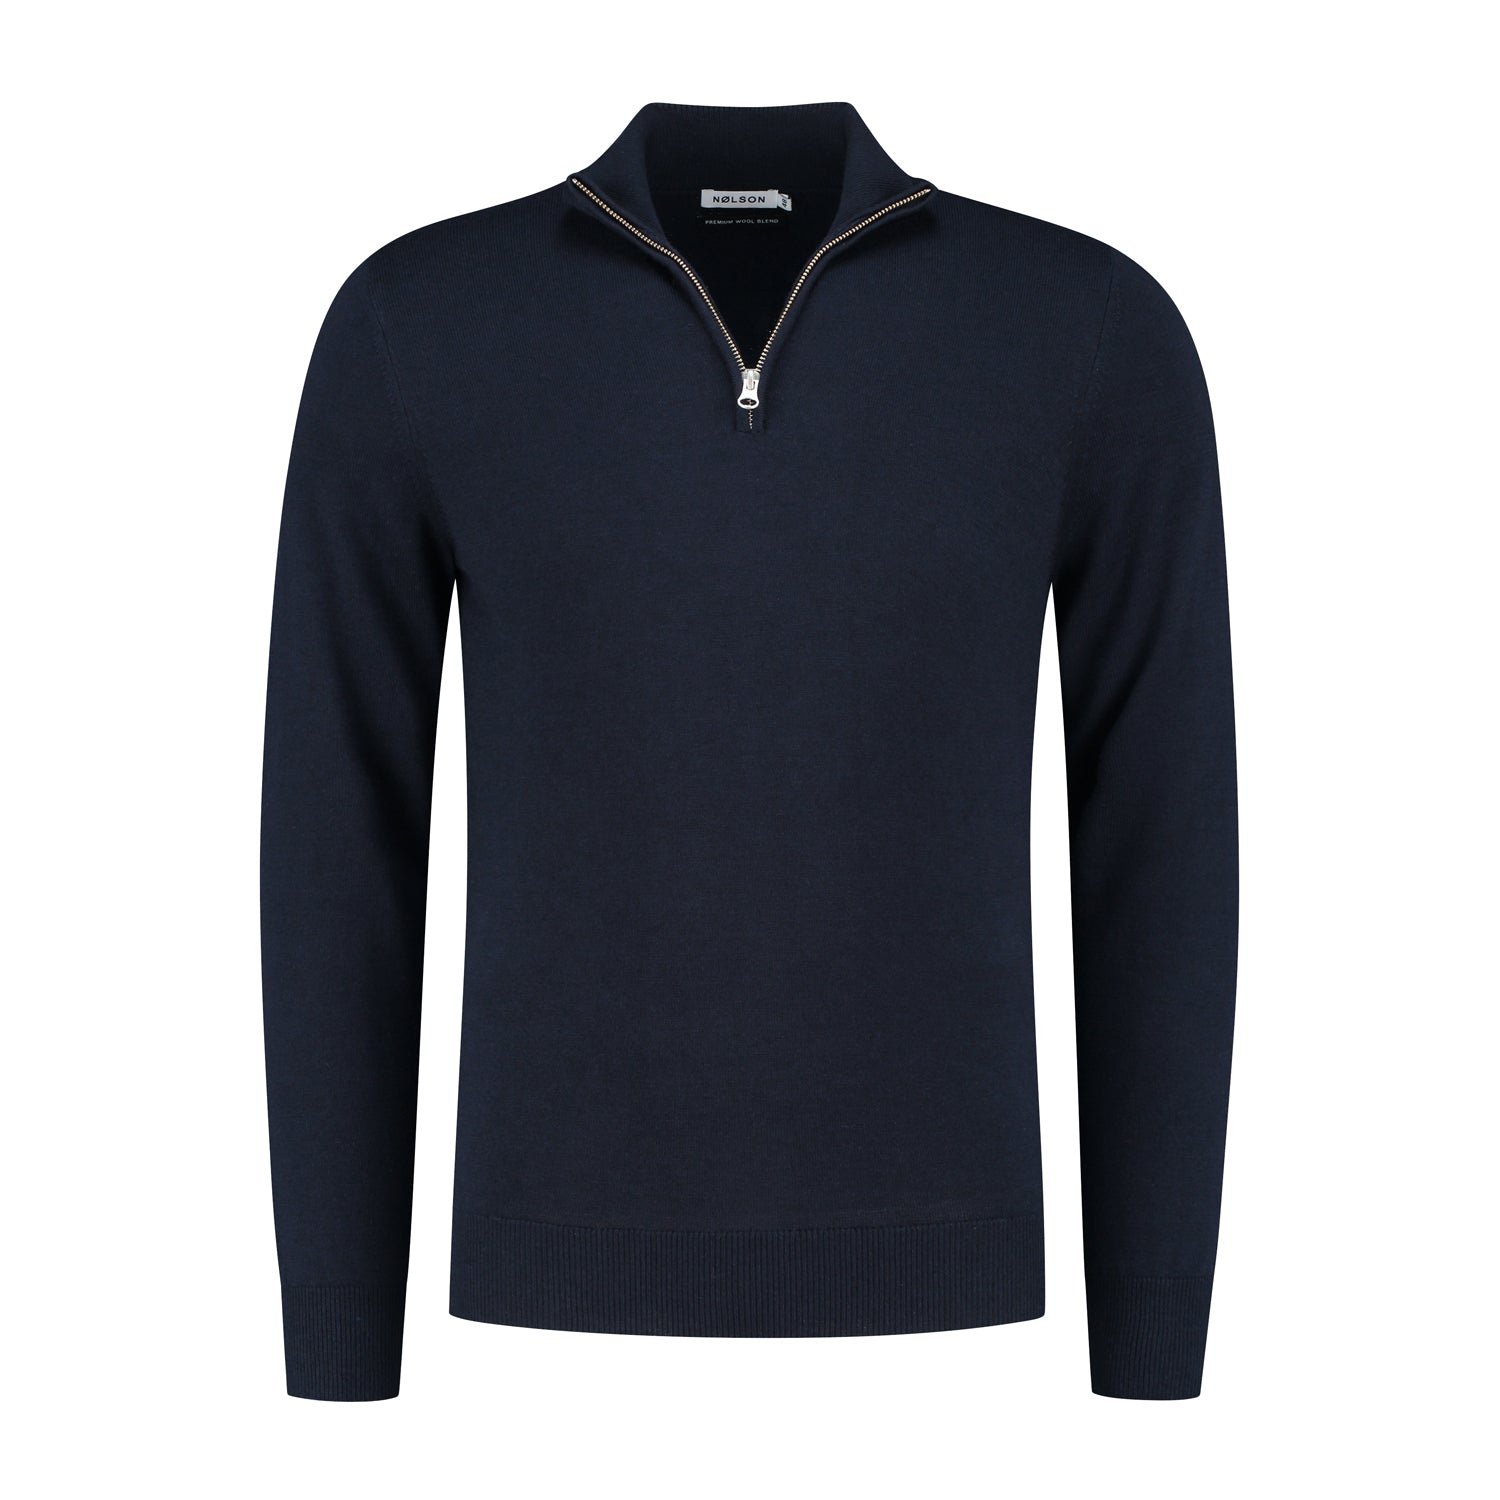 Quarter-zip Navy Sweater